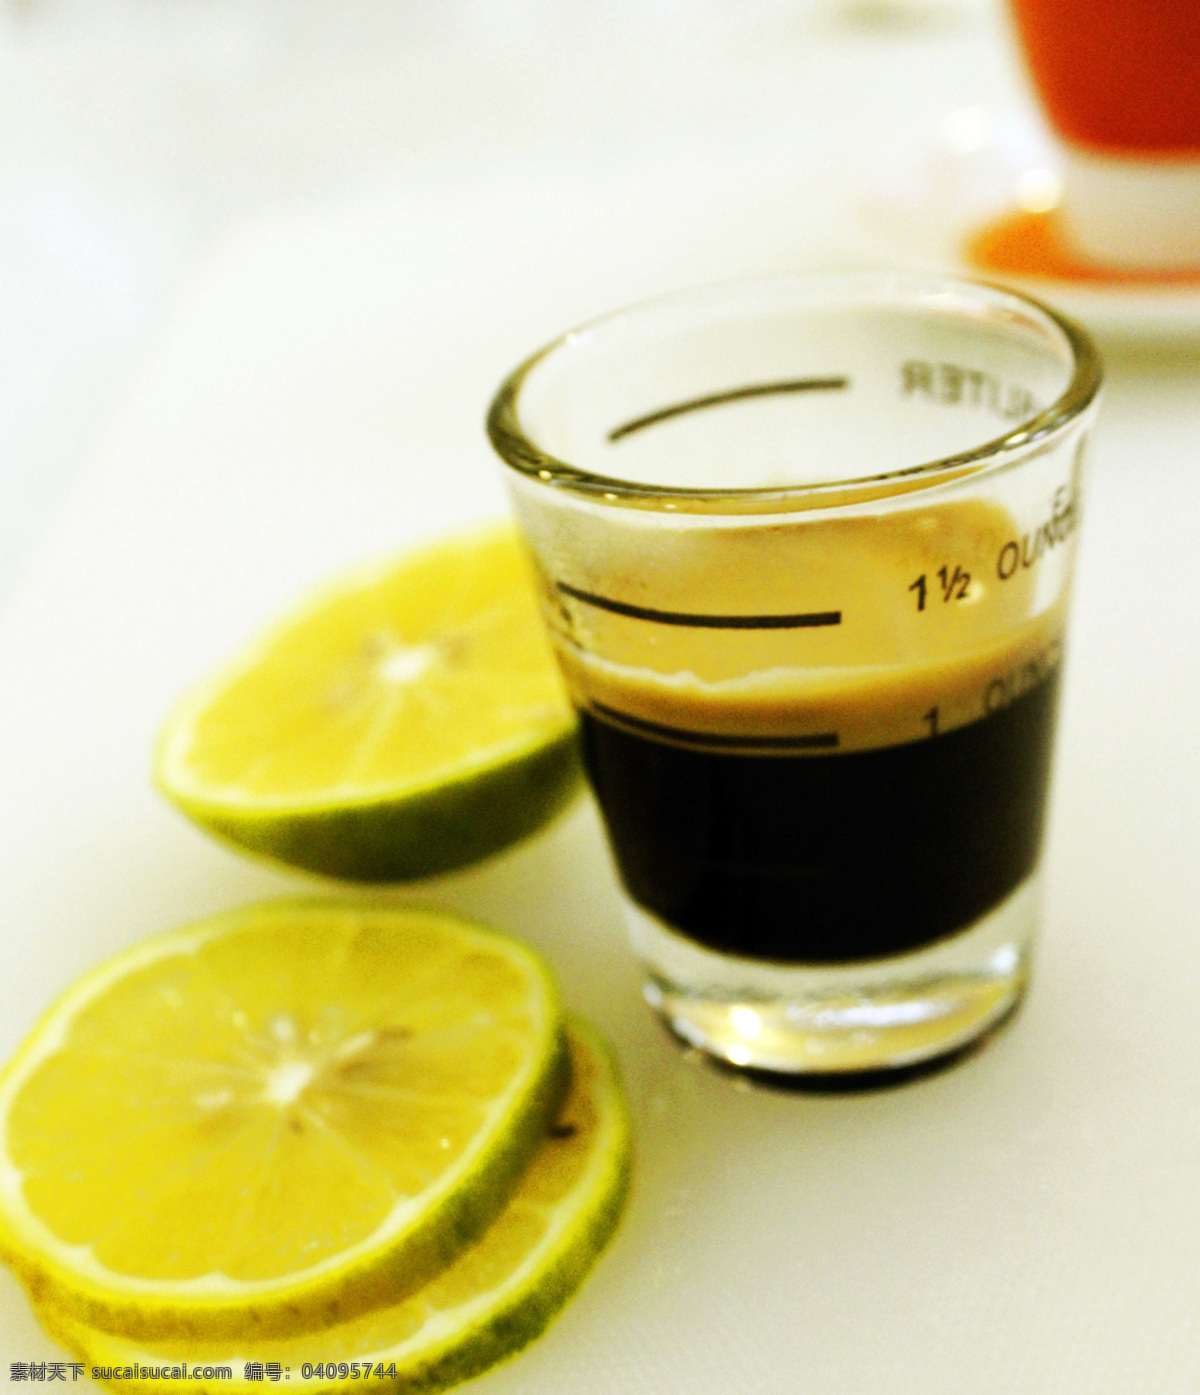 浓缩咖啡 咖啡 黑咖啡 柠檬 咖啡柠檬 餐饮美食 饮料酒水